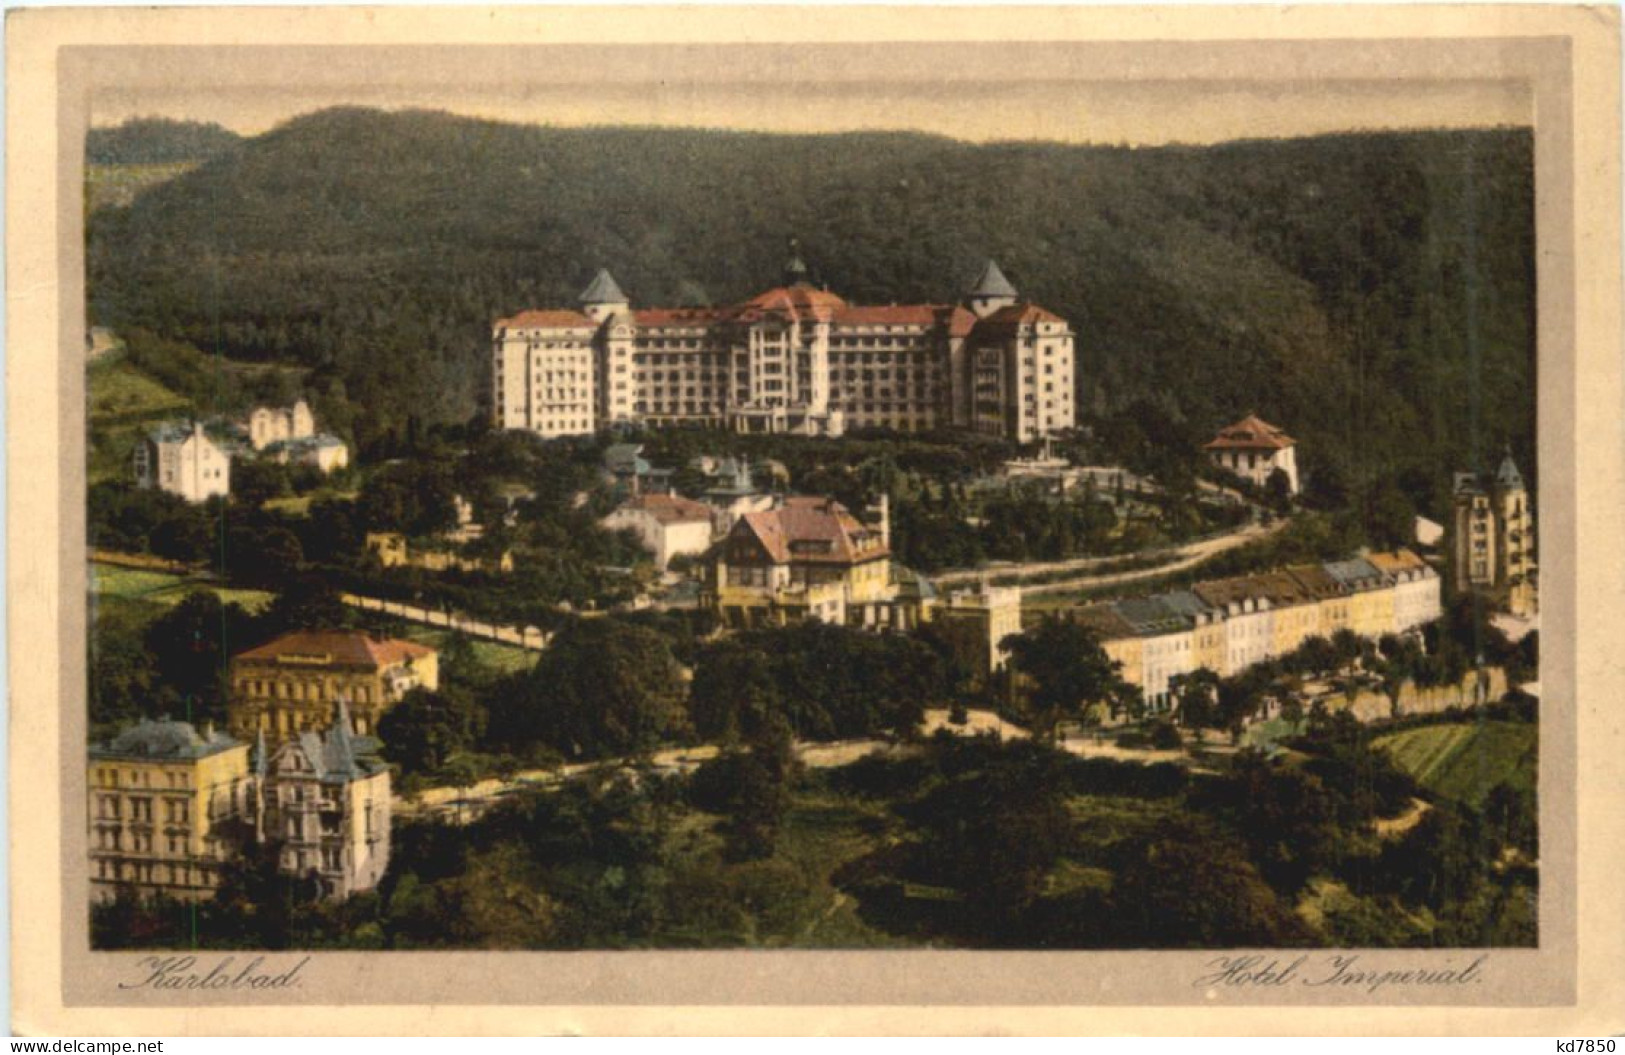 Karlsbad - Hotel Imperial - Bohemen En Moravië